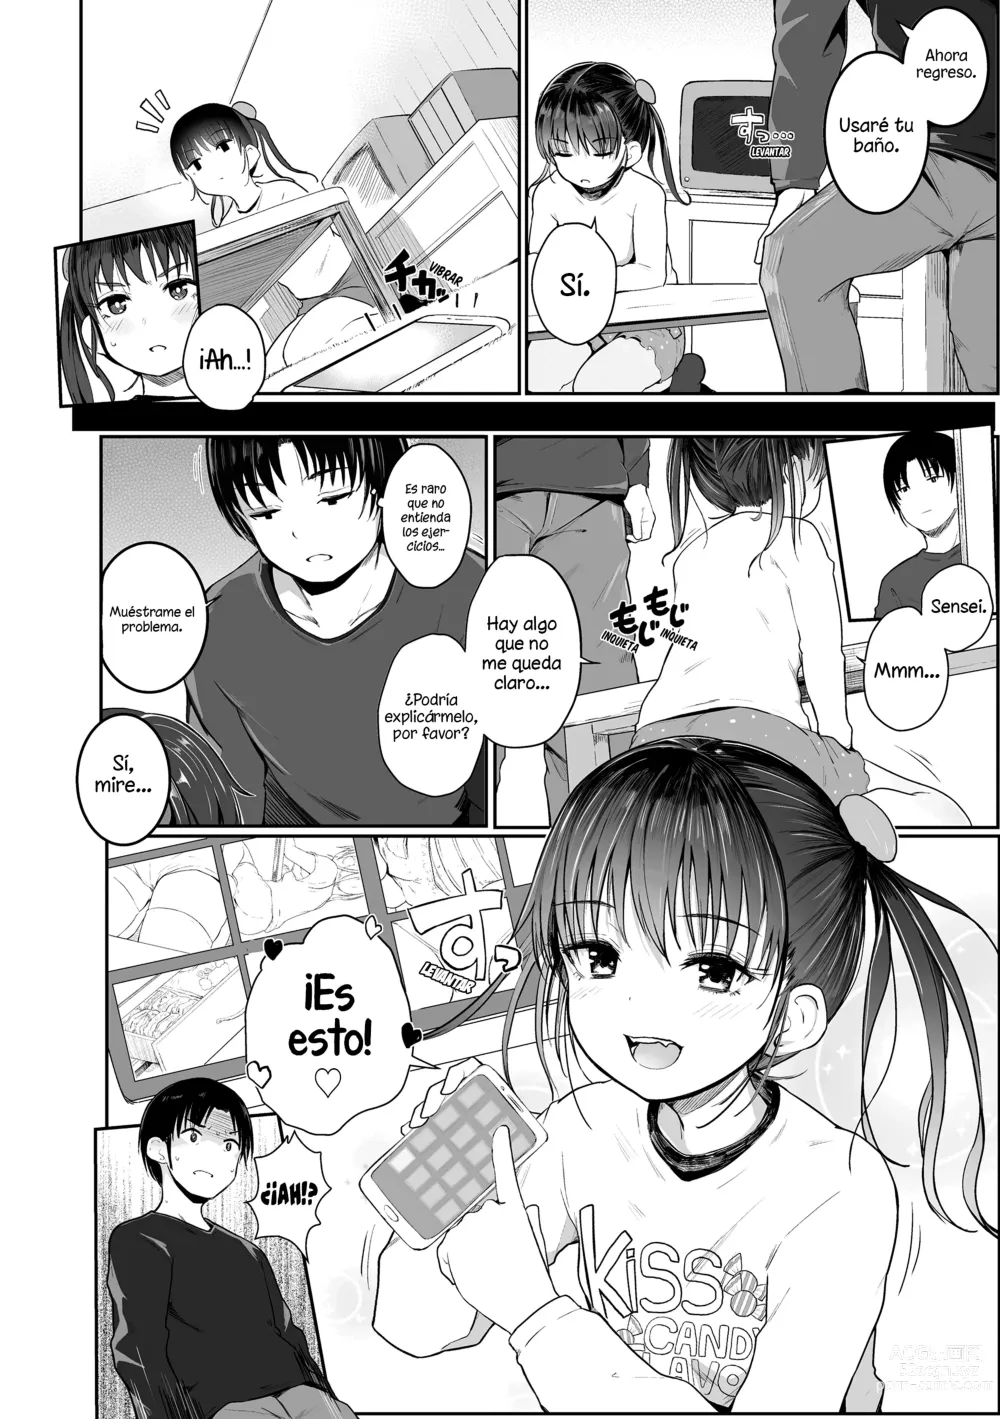 Page 2 of manga ¡Enséñame❤Sensei!